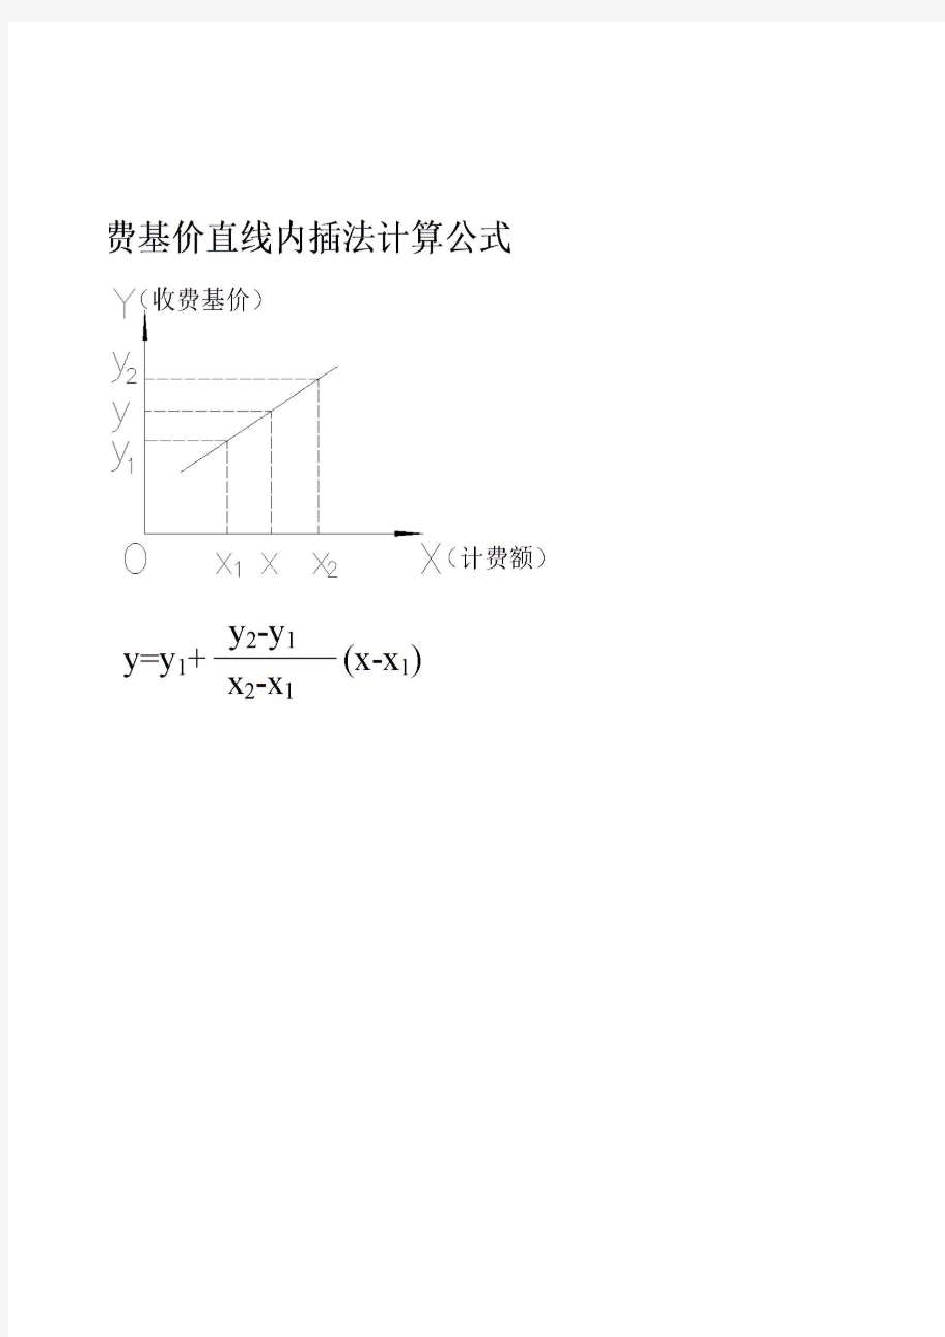 直线内插法计算公式(可用于监理费、设计费计算等)